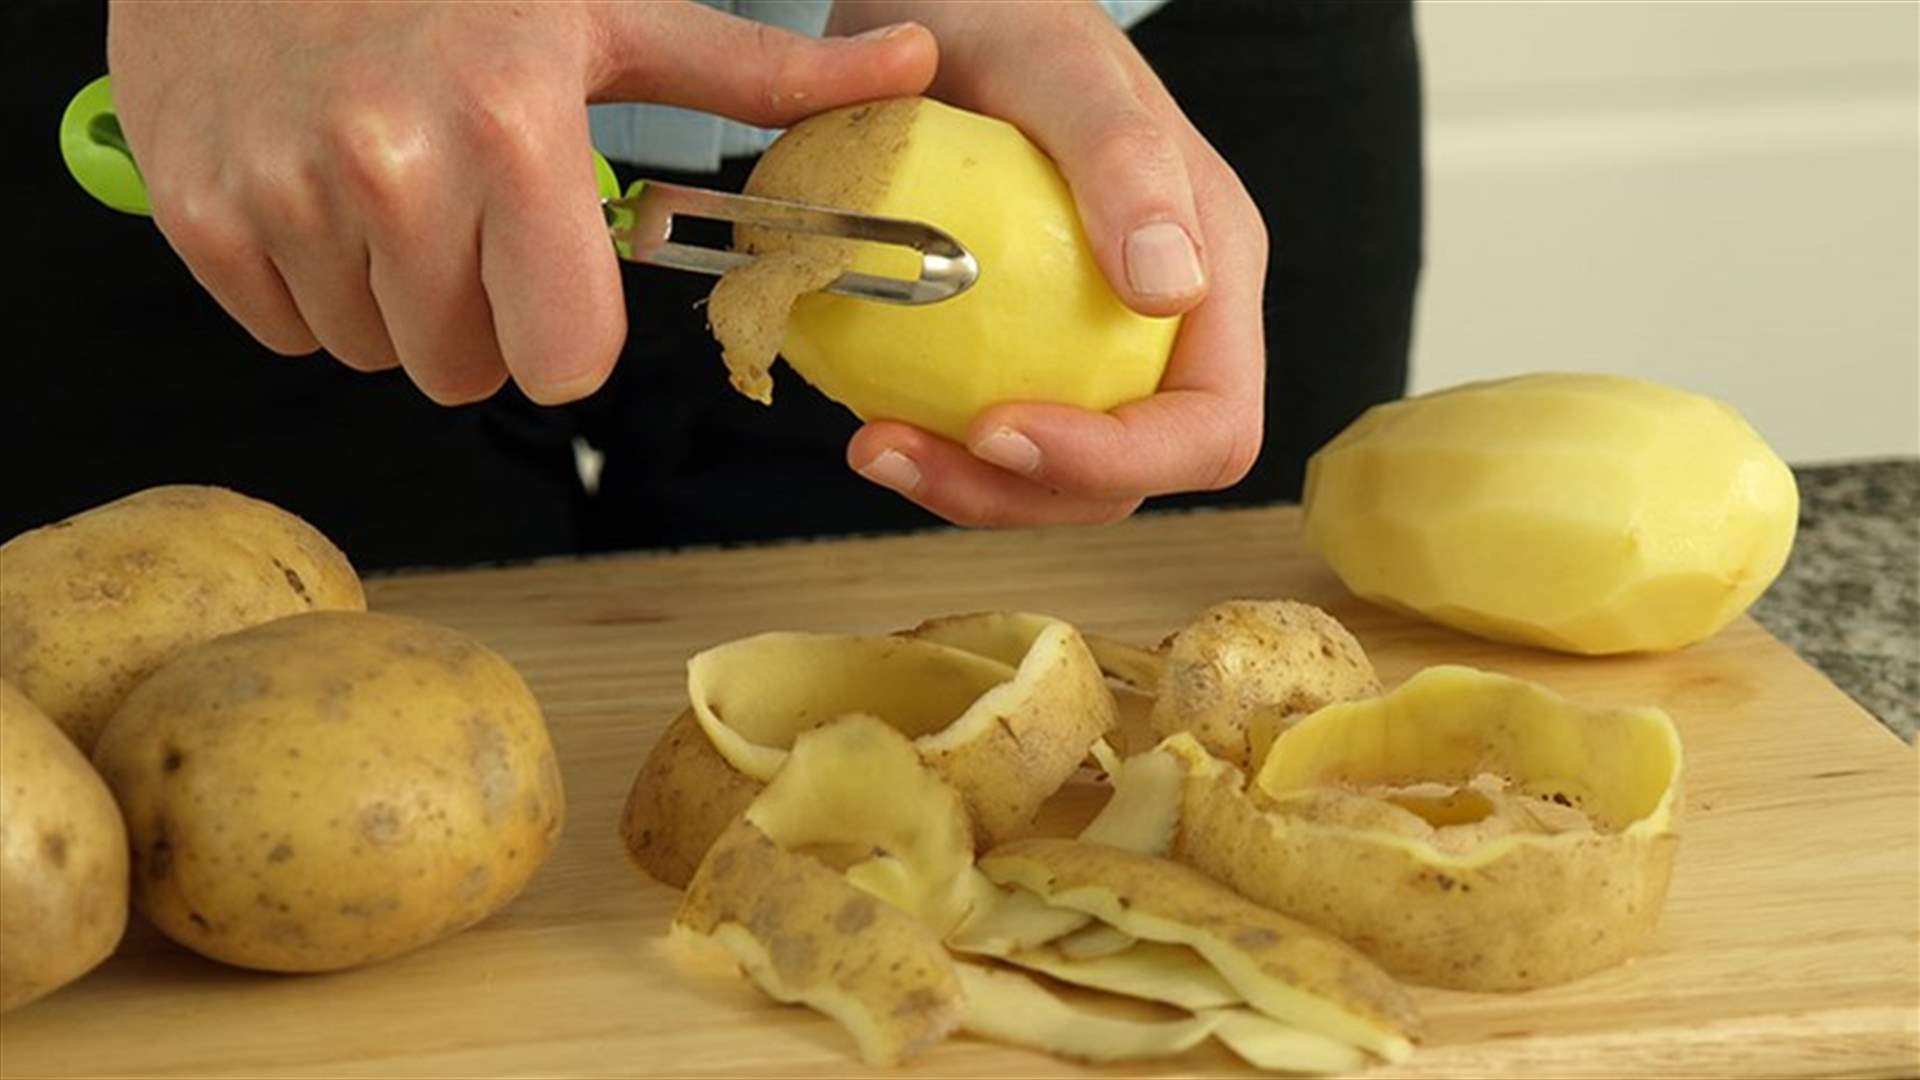 5 فوائد واستخدامات لقشور البطاطس... لم تعرفوها من قبل!